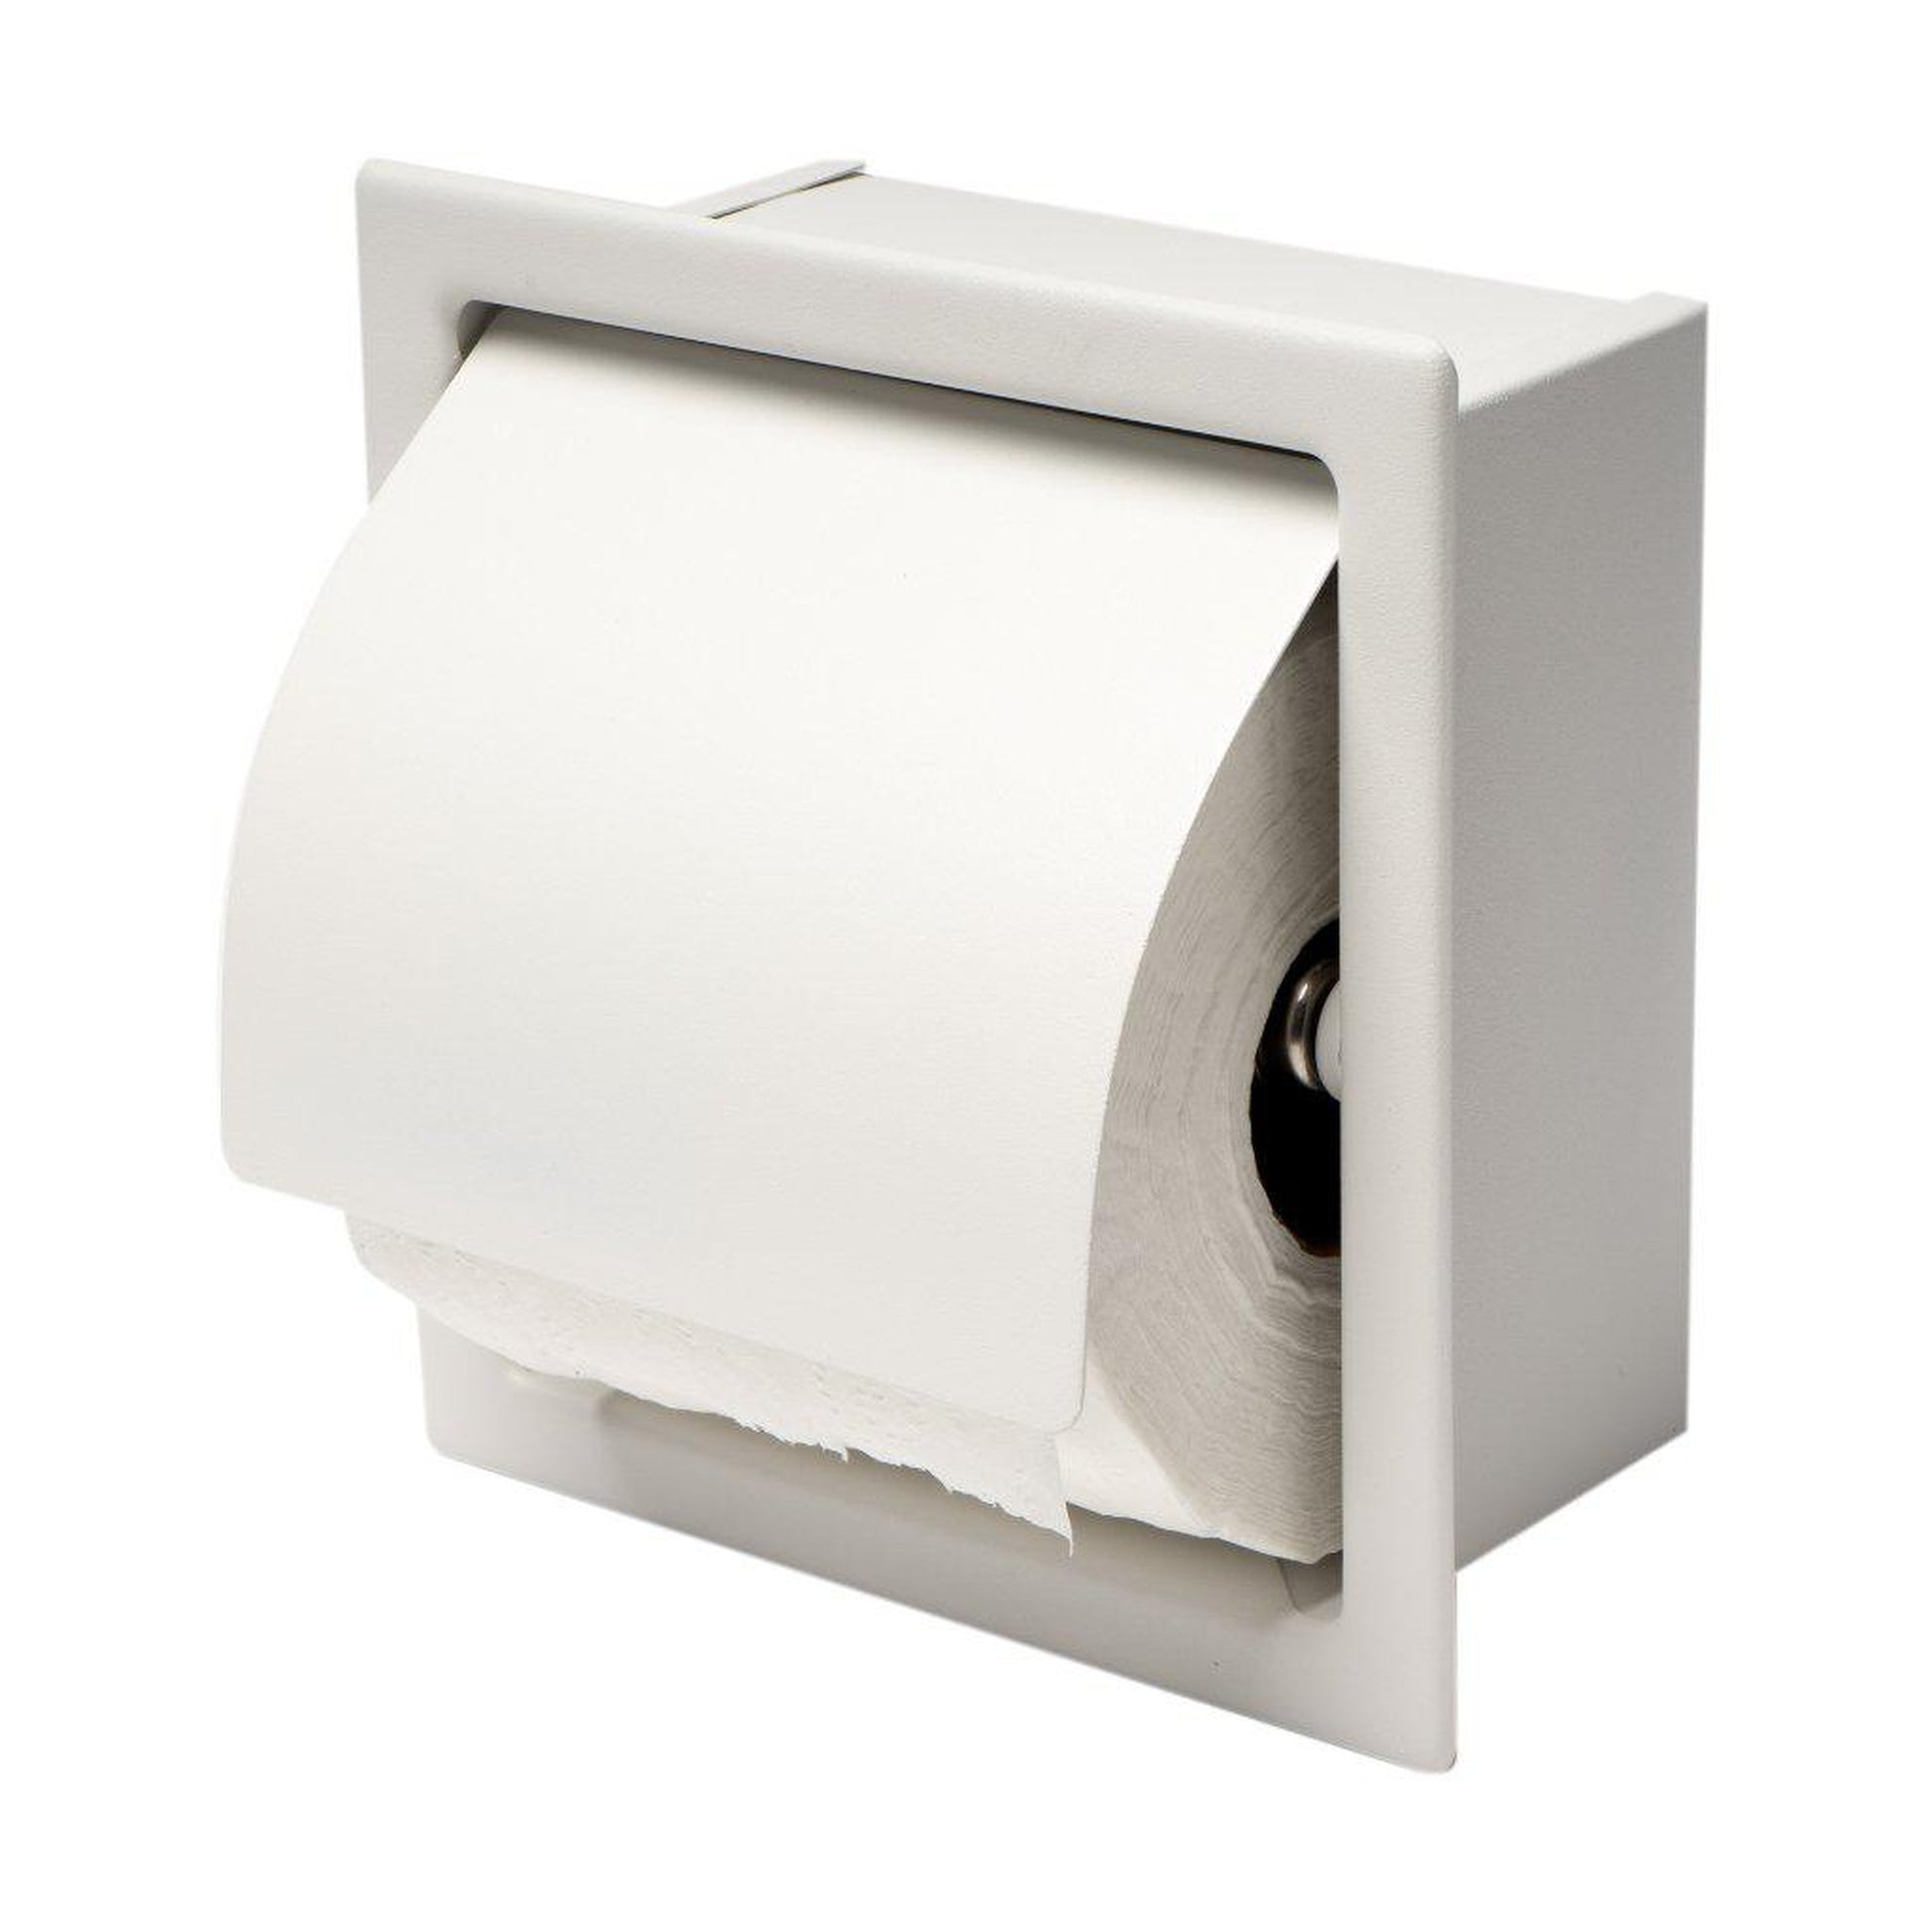 Freestanding Toilet Tissue Holder with Storage Bronze - Nu Steel